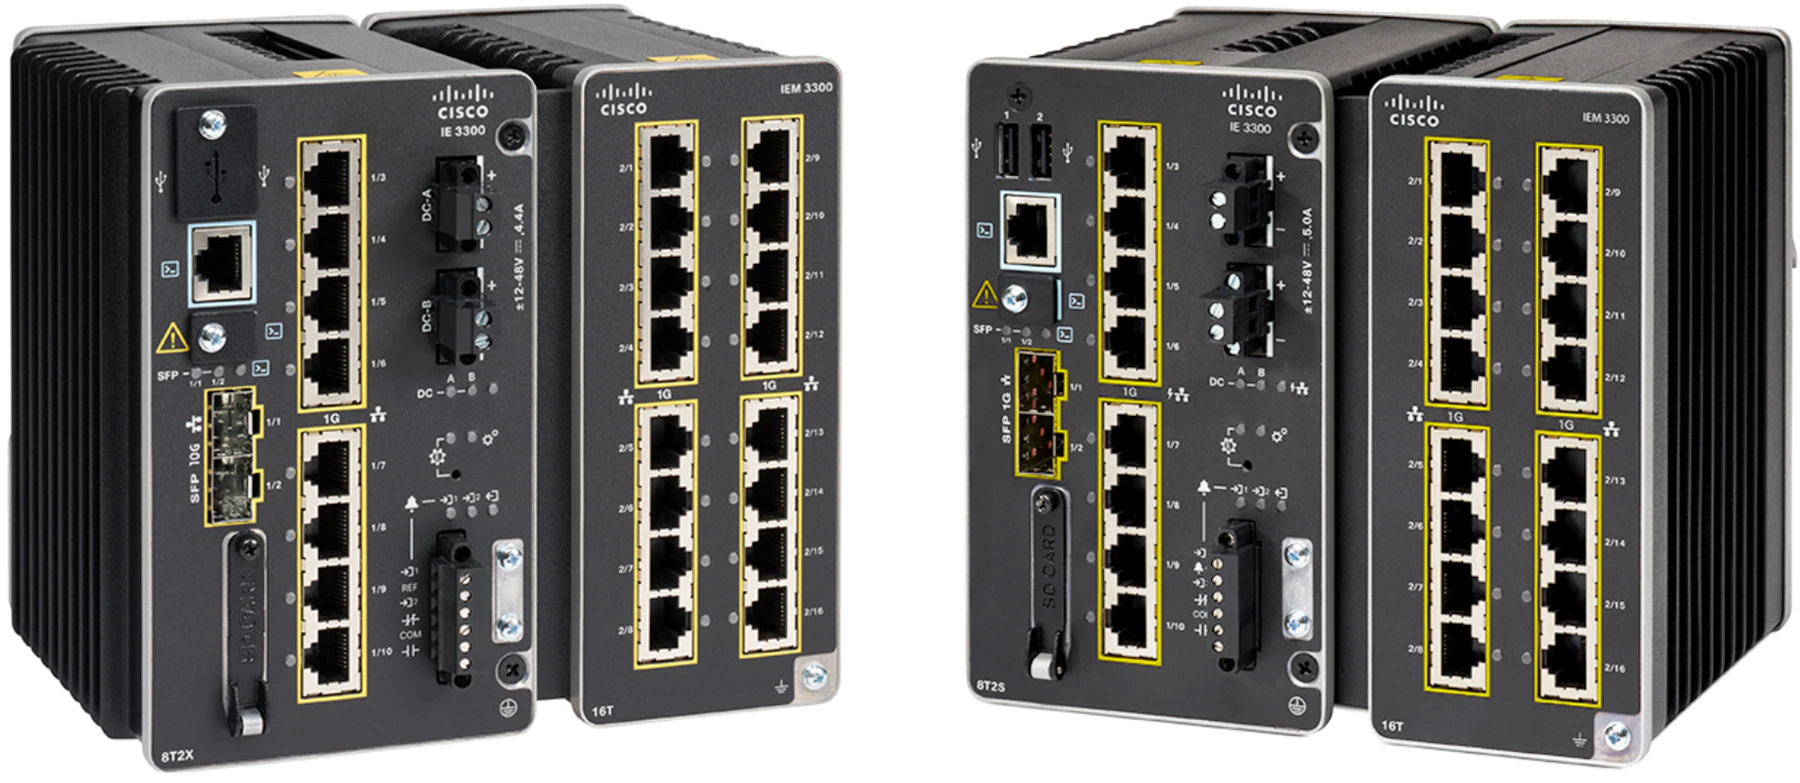 Cisco Catalyst IE-3200-8T2S-E Network Switch Managed L2/L3 Gigabit Ethernet (10/100/1000) Black